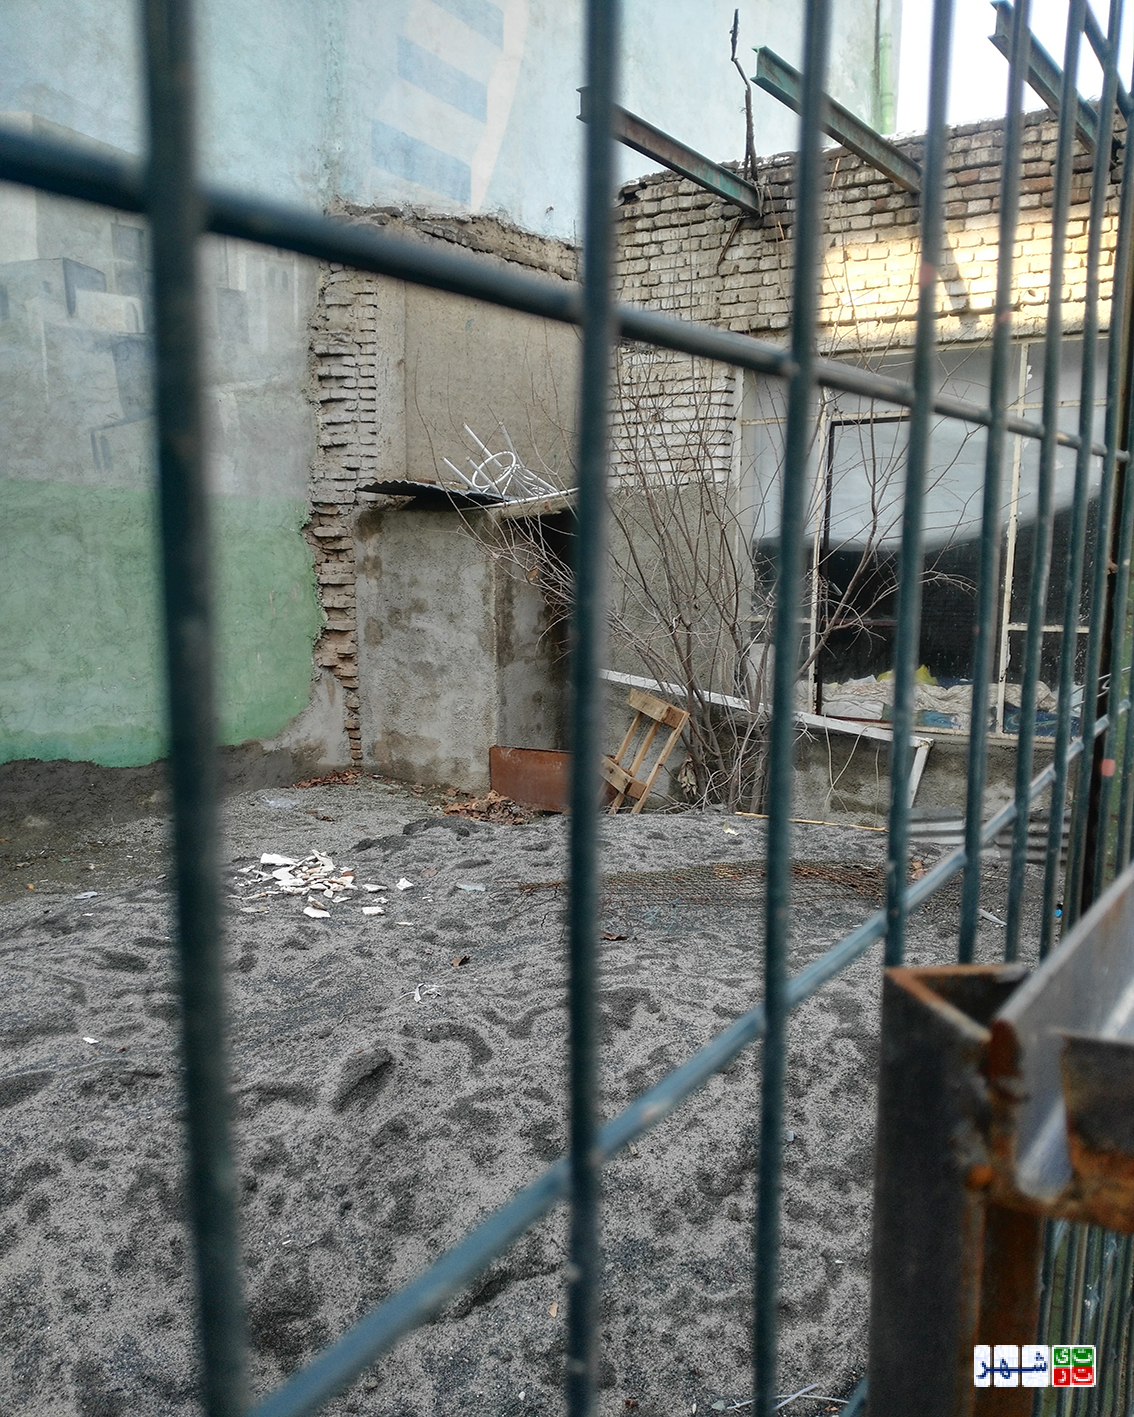 زندگی درکوچه های متروکه یک متری!/ یک شبه بخت سیاه خانه های امامزاده عبدالله باز شد!